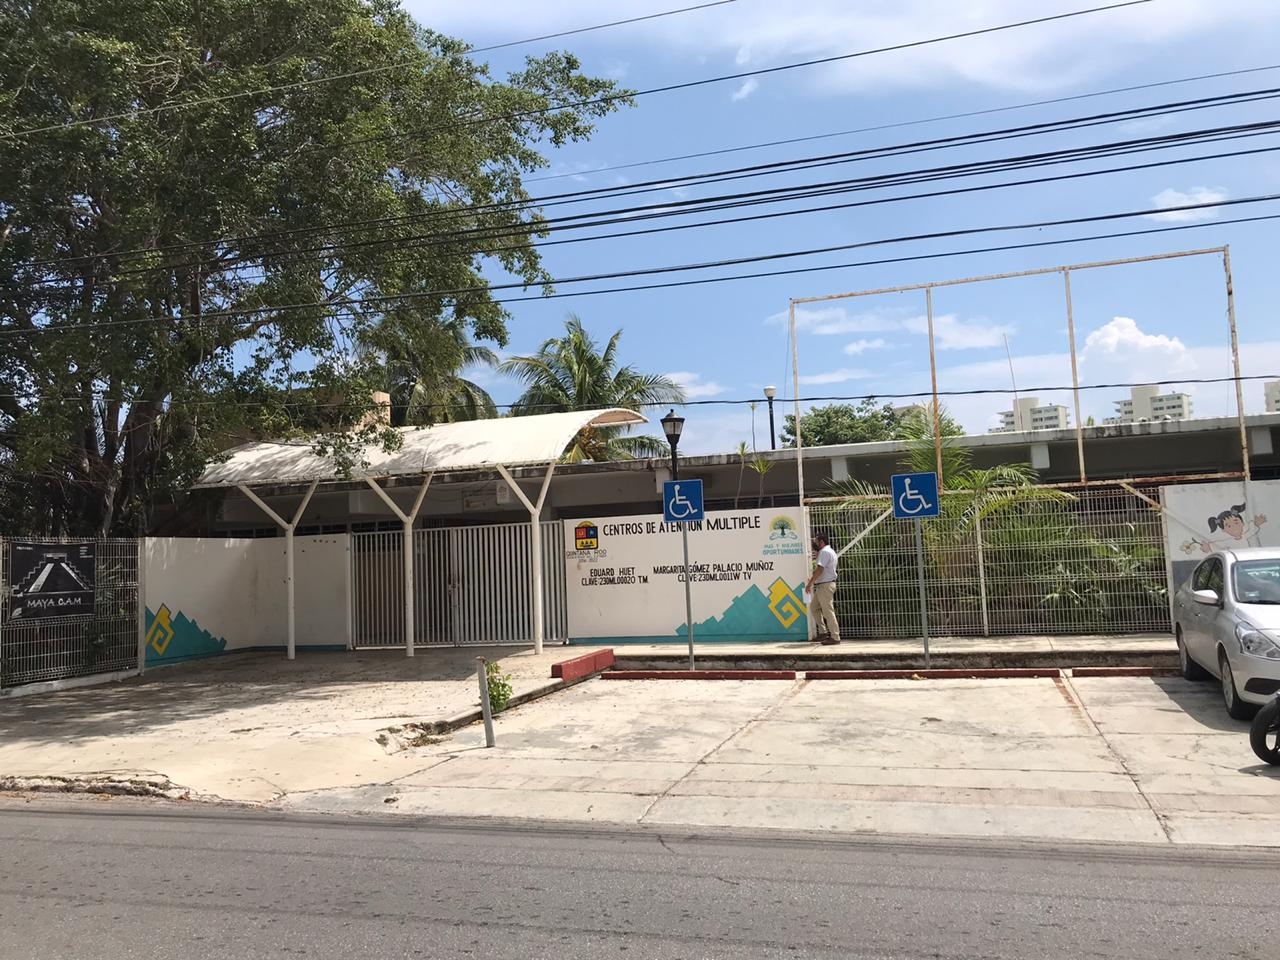 Vandalizan Centro de Atención Múltiple “Eduart Huet" en Cancún